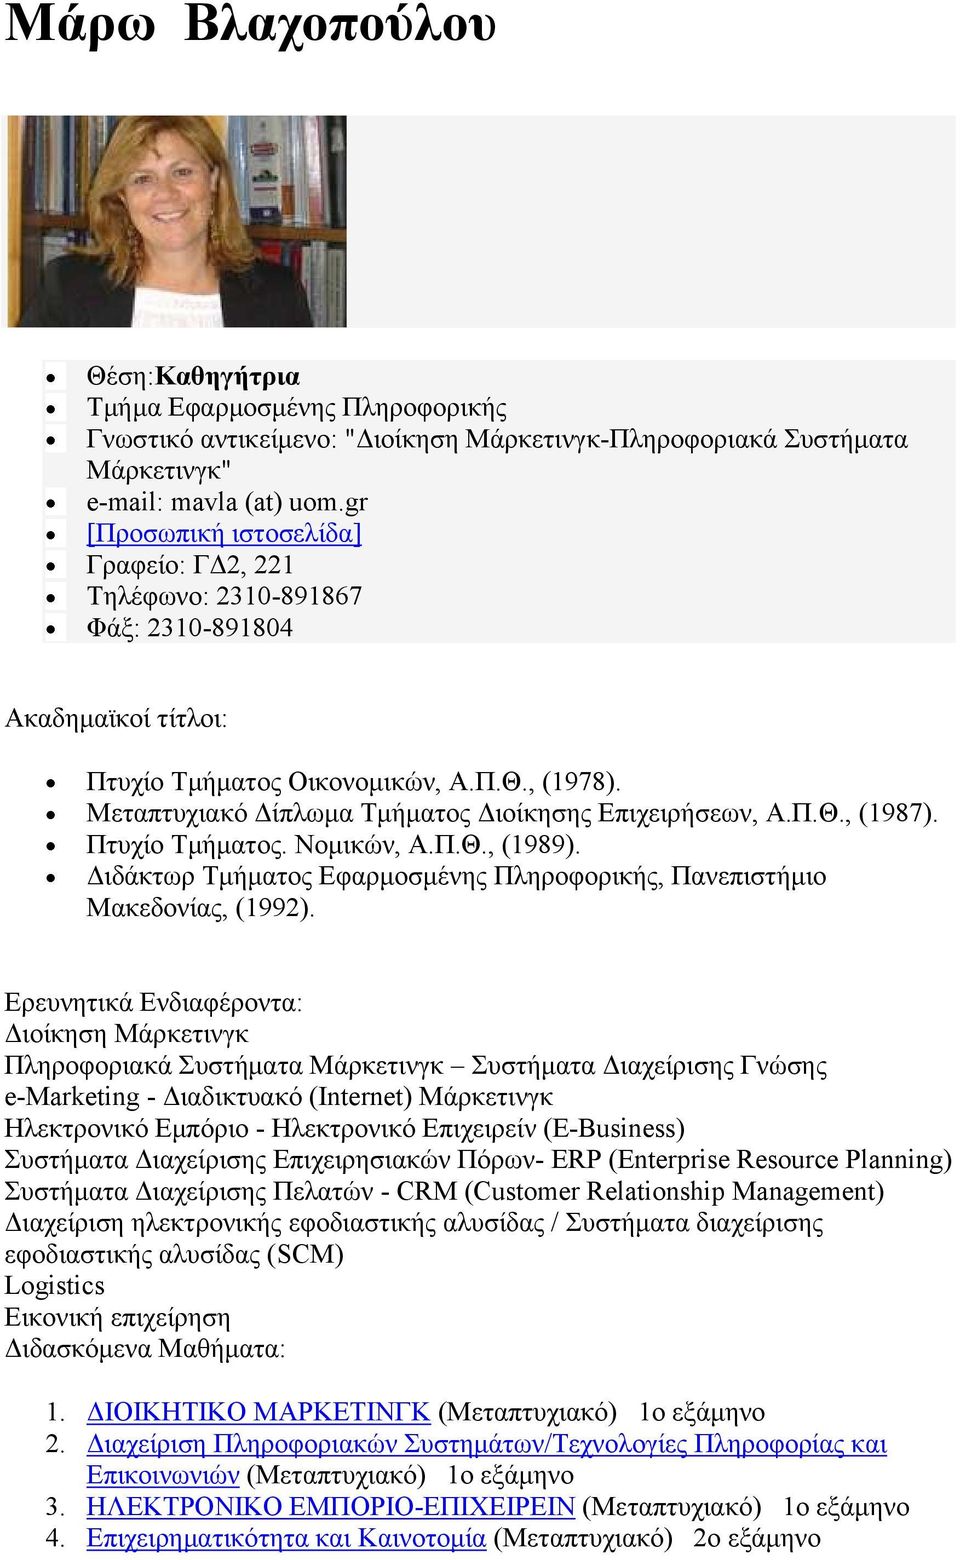 Μεταπτυχιακό Δίπλωμα Τμήματος Διοίκησης Επιχειρήσεων, Α.Π.Θ., (1987). Πτυχίο Τμήματος. Νομικών, Α.Π.Θ., (1989). Διδάκτωρ Τμήματος Εφαρμοσμένης Πληροφορικής, Πανεπιστήμιο Μακεδονίας, (1992).